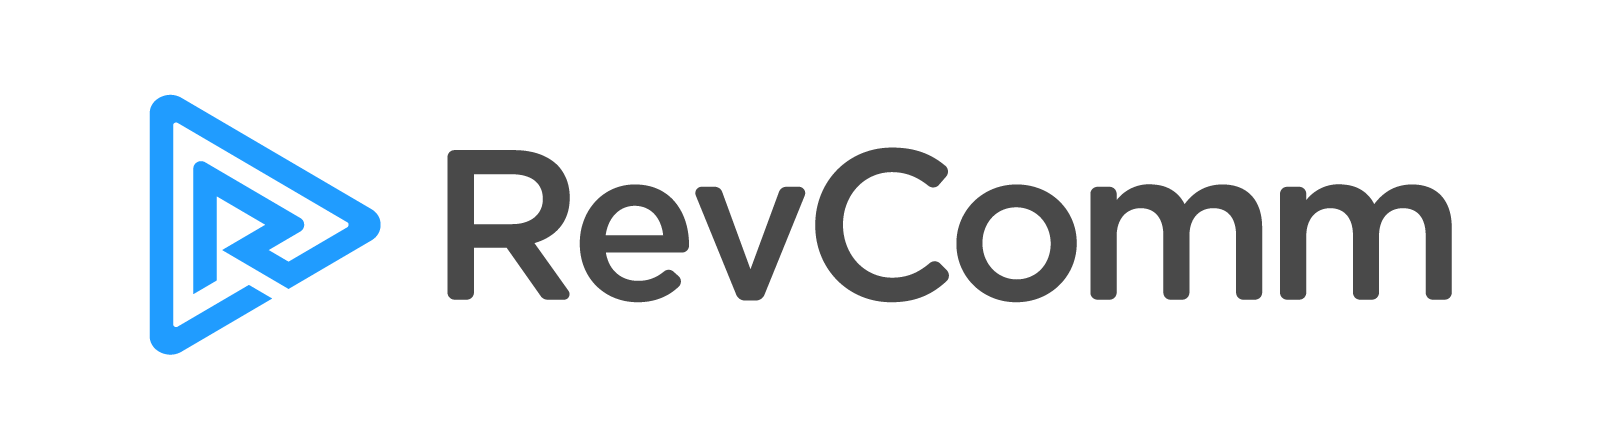 RevComm Co., Ltd.